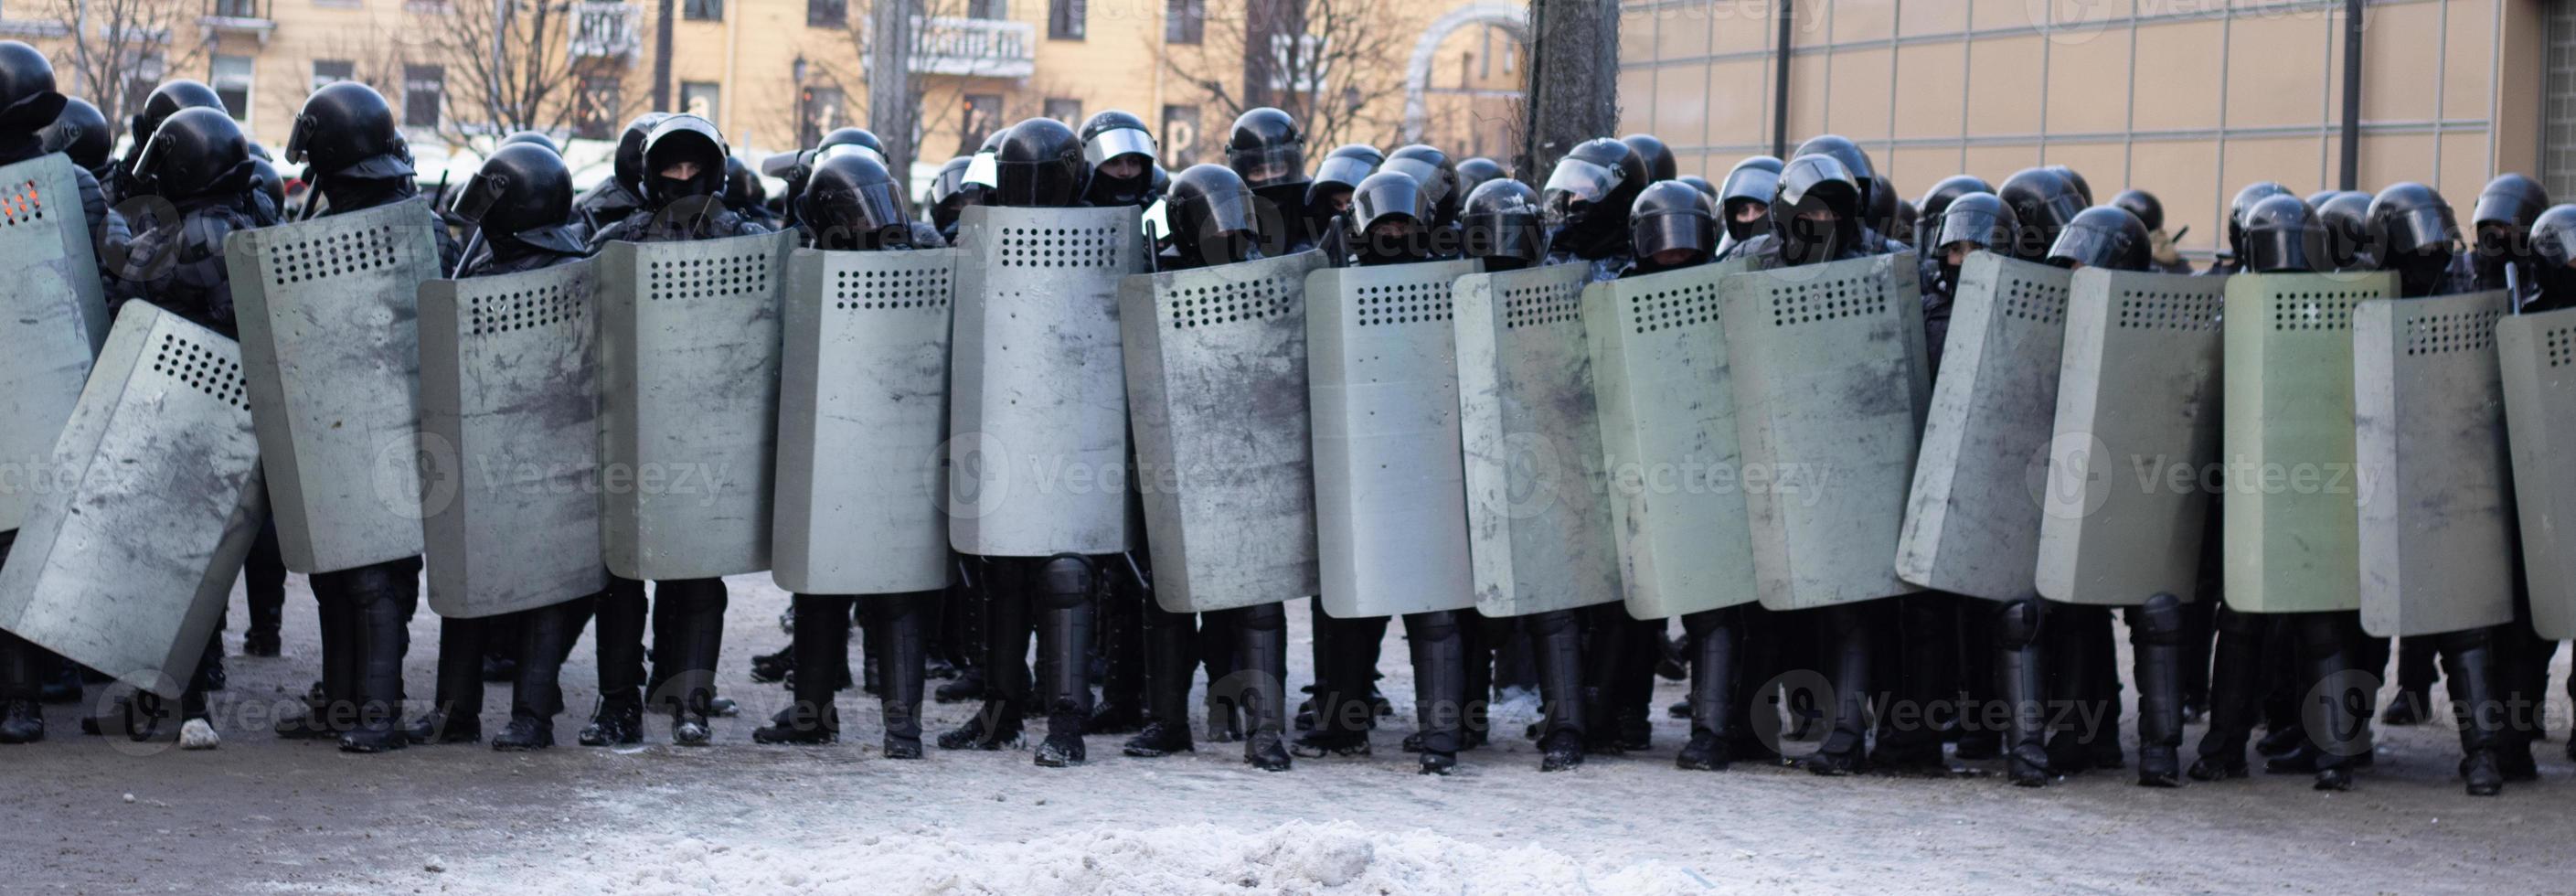 alboroto policía lleno equipo. armadura y escudos militar policía uniforme, policía lucha protesta foto